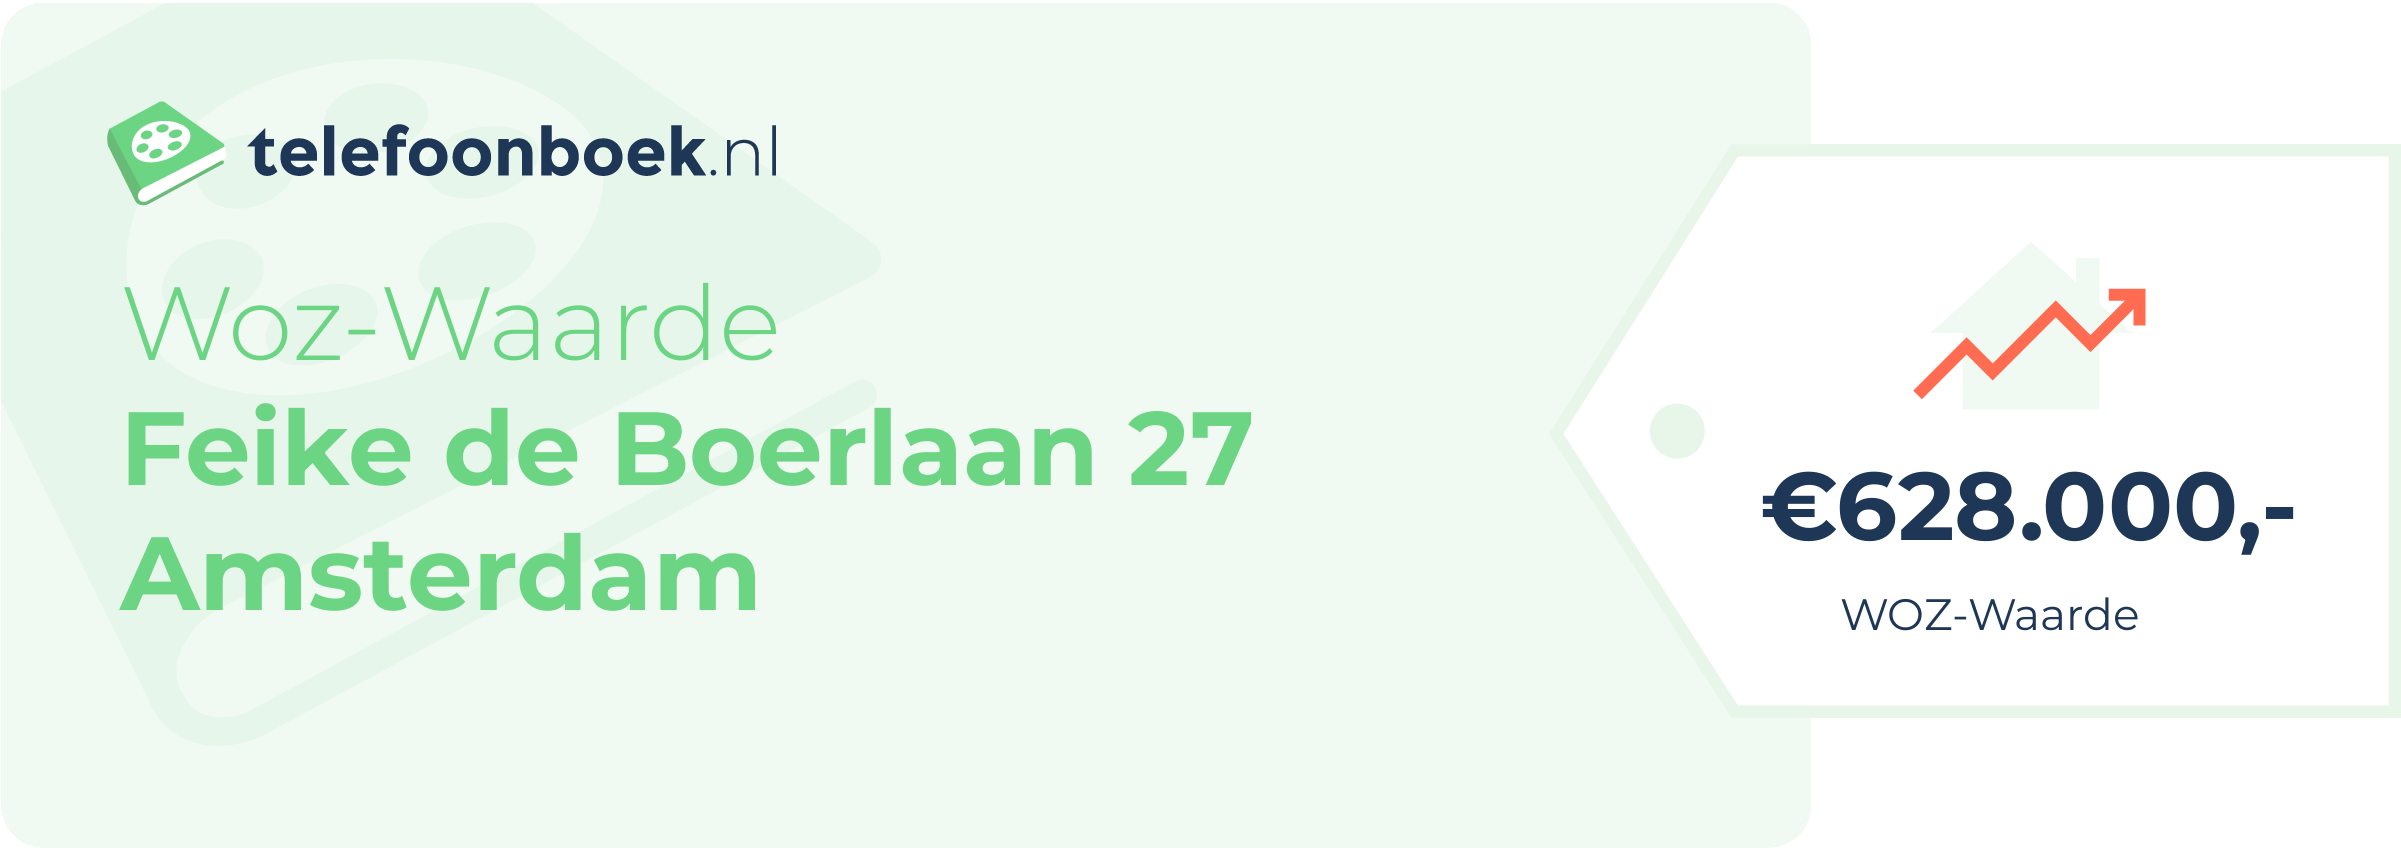 WOZ-waarde Feike De Boerlaan 27 Amsterdam